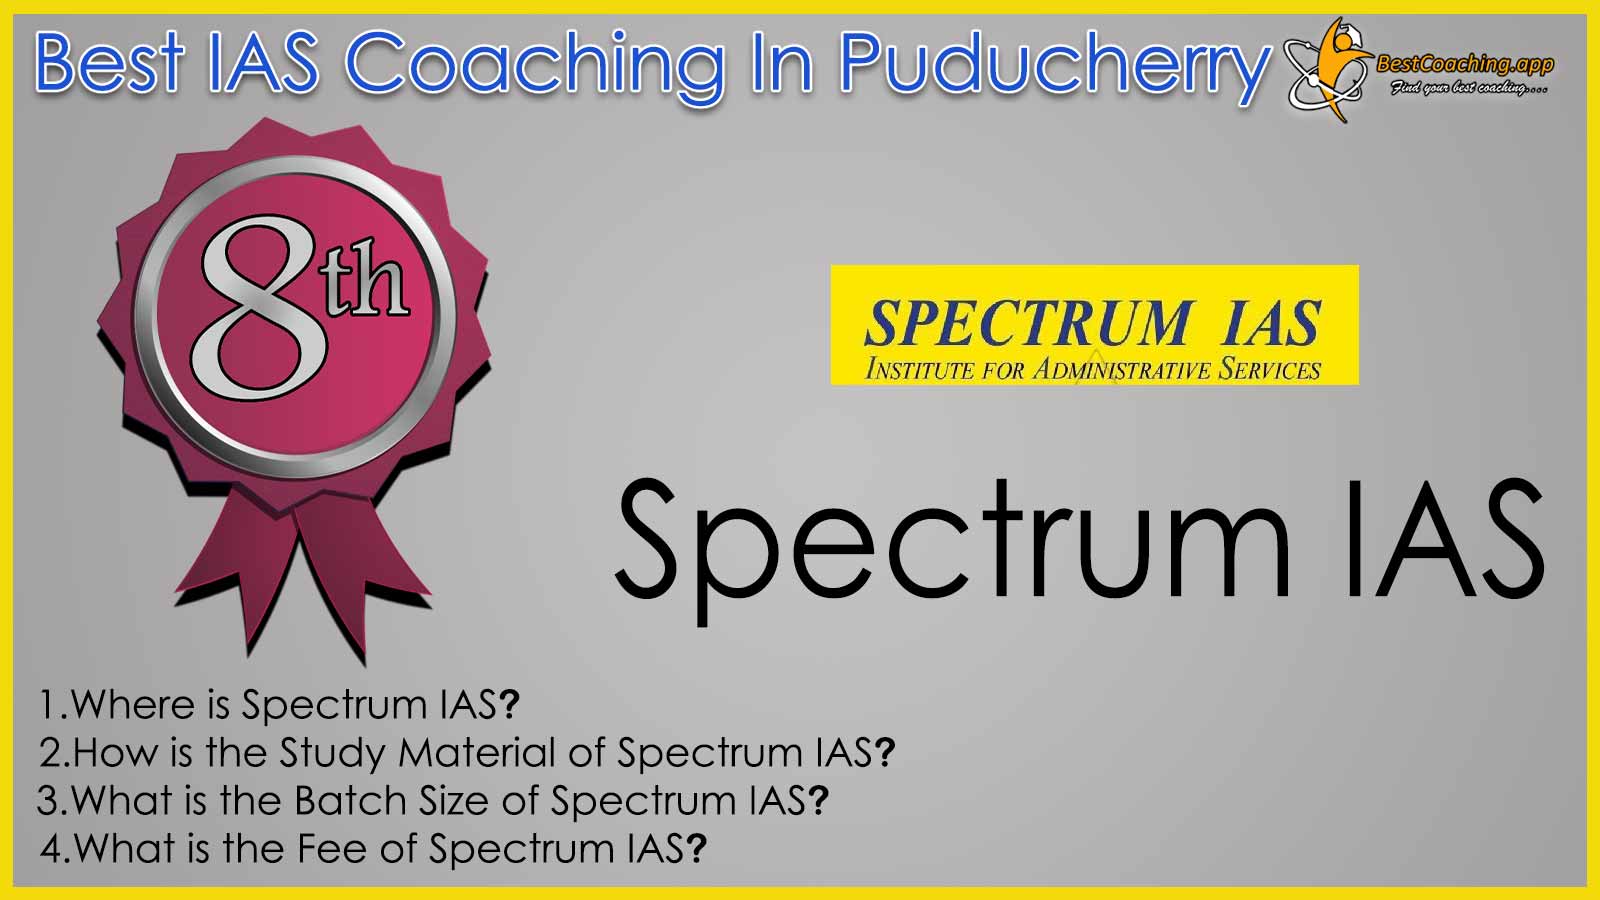 Spectrum IAS Coaching